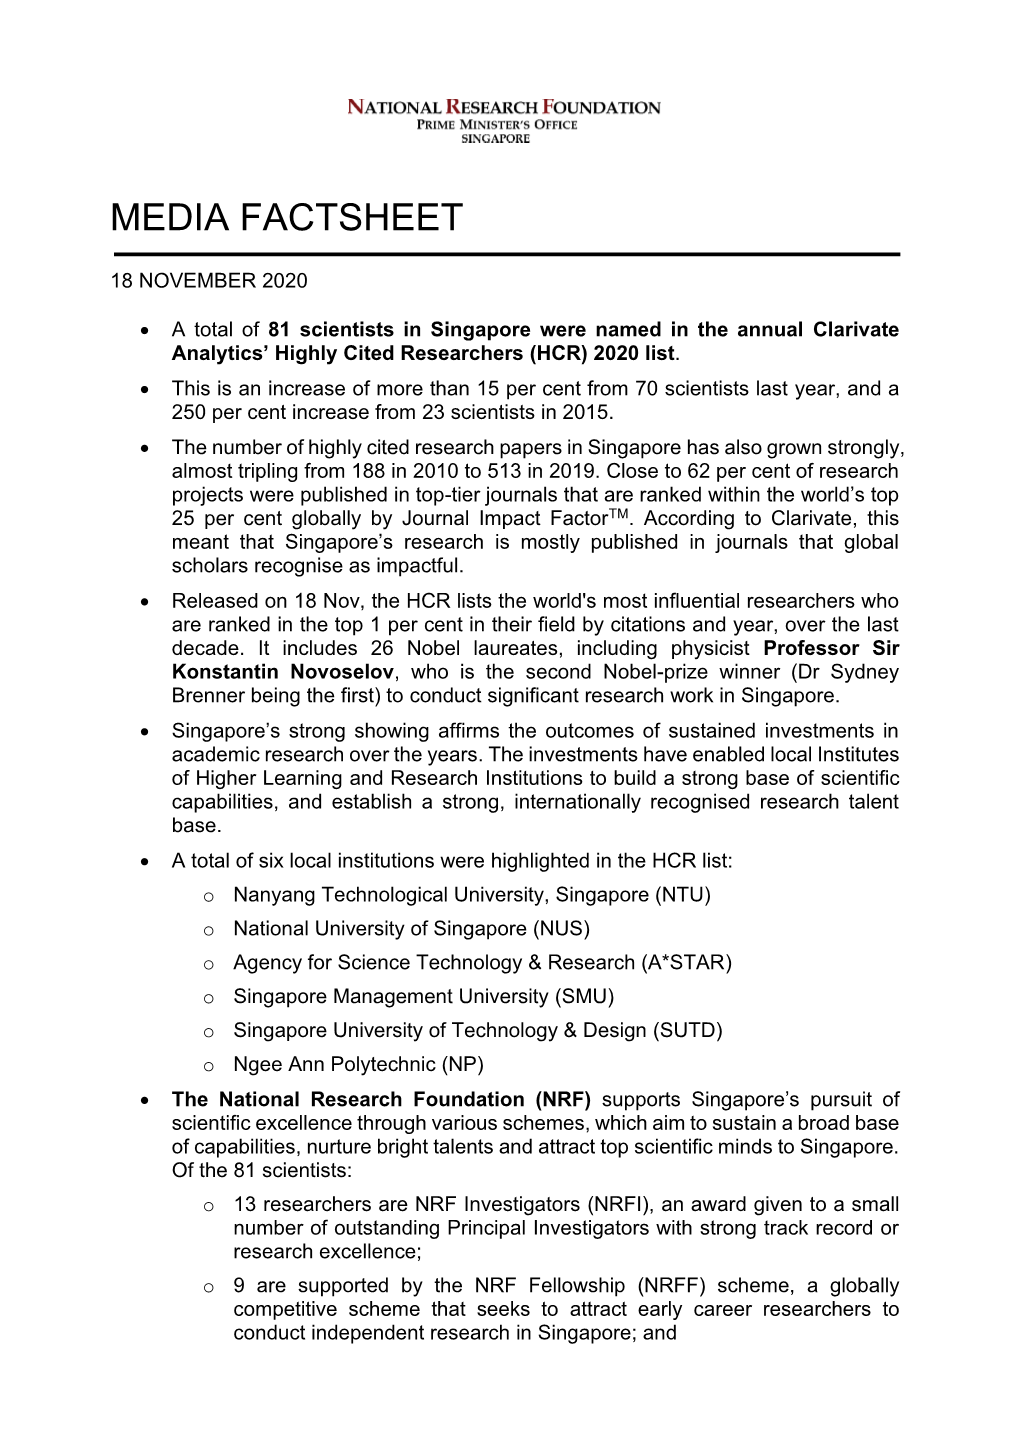 Media Factsheet